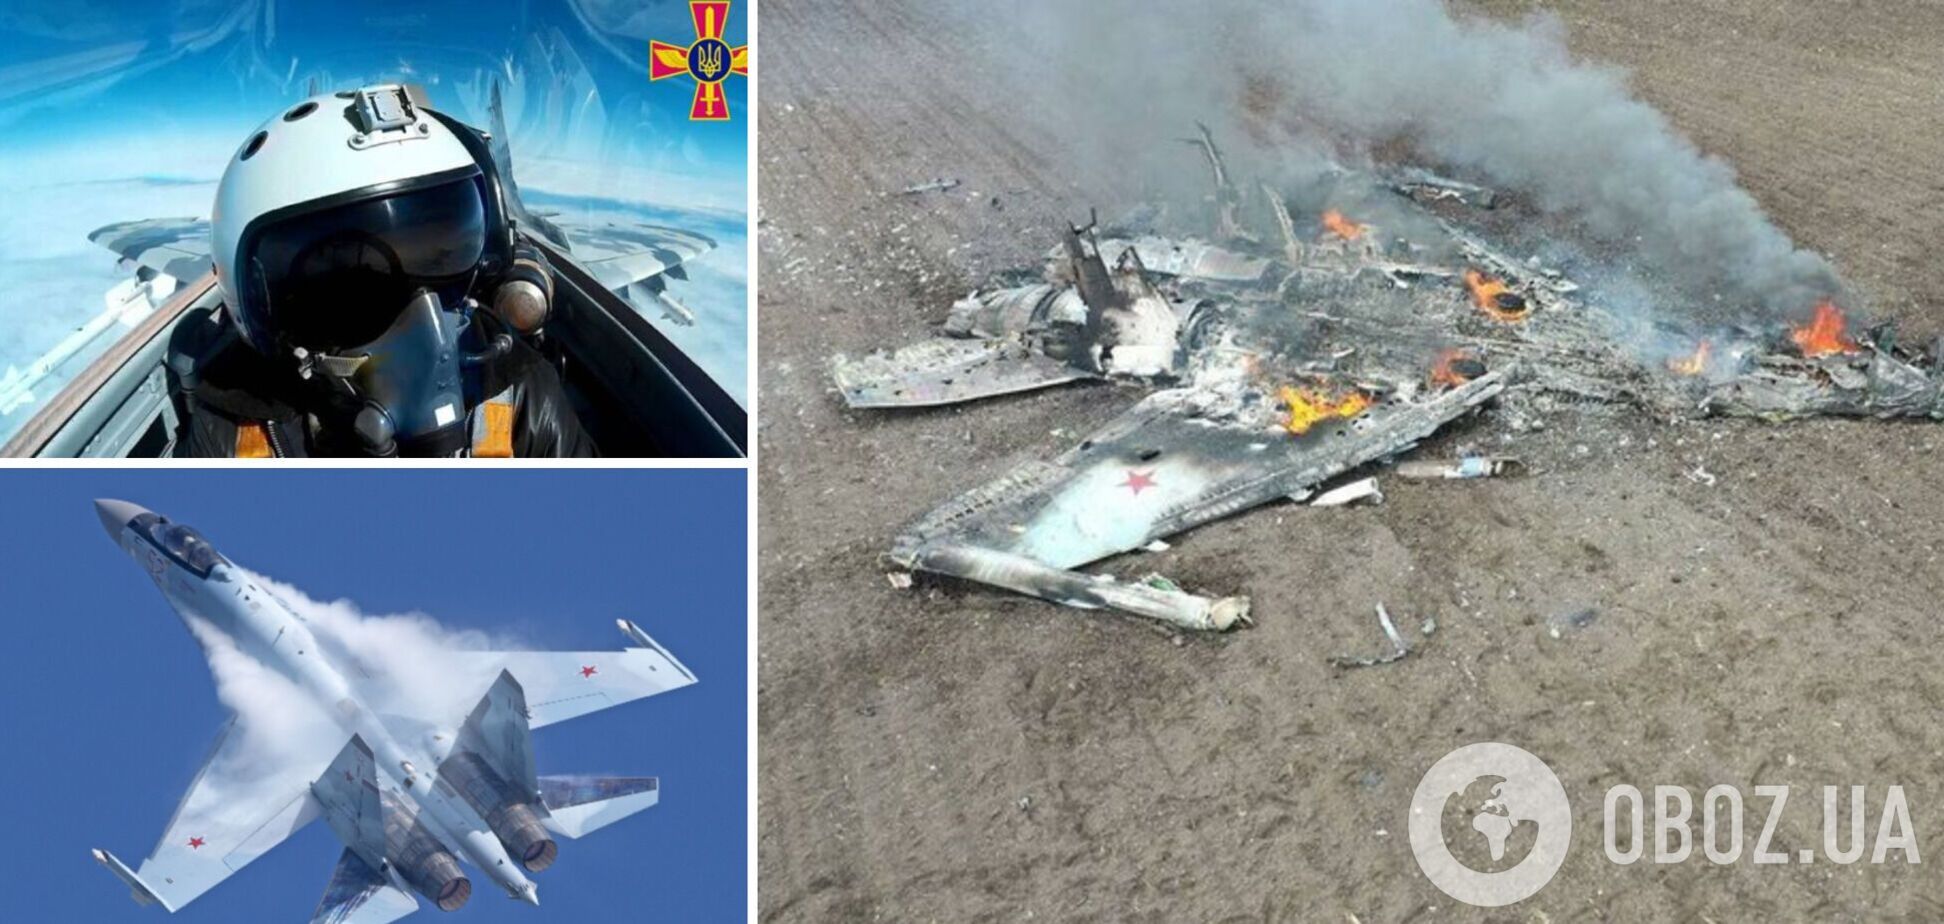 Український льотчик збив Су-35 та 'покришив' позицію окупантів: деталі вражаючого повітряного бою над Херсонщиною